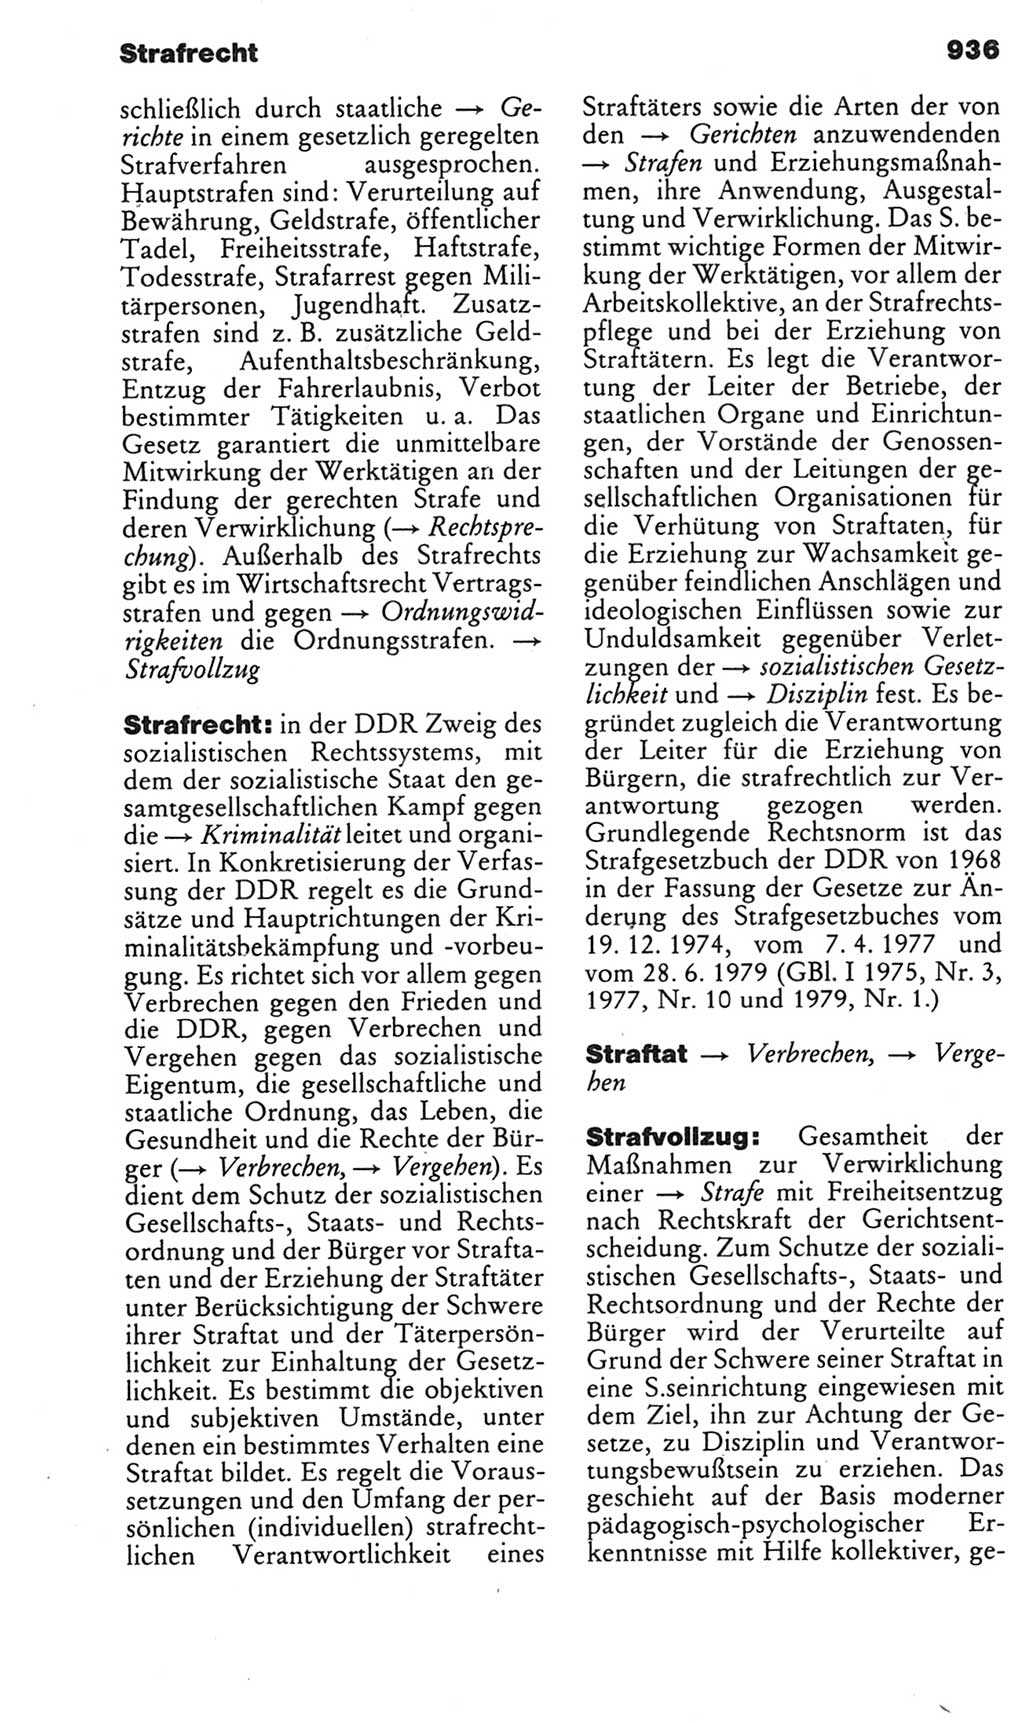 Kleines politisches Wörterbuch [Deutsche Demokratische Republik (DDR)] 1985, Seite 936 (Kl. pol. Wb. DDR 1985, S. 936)